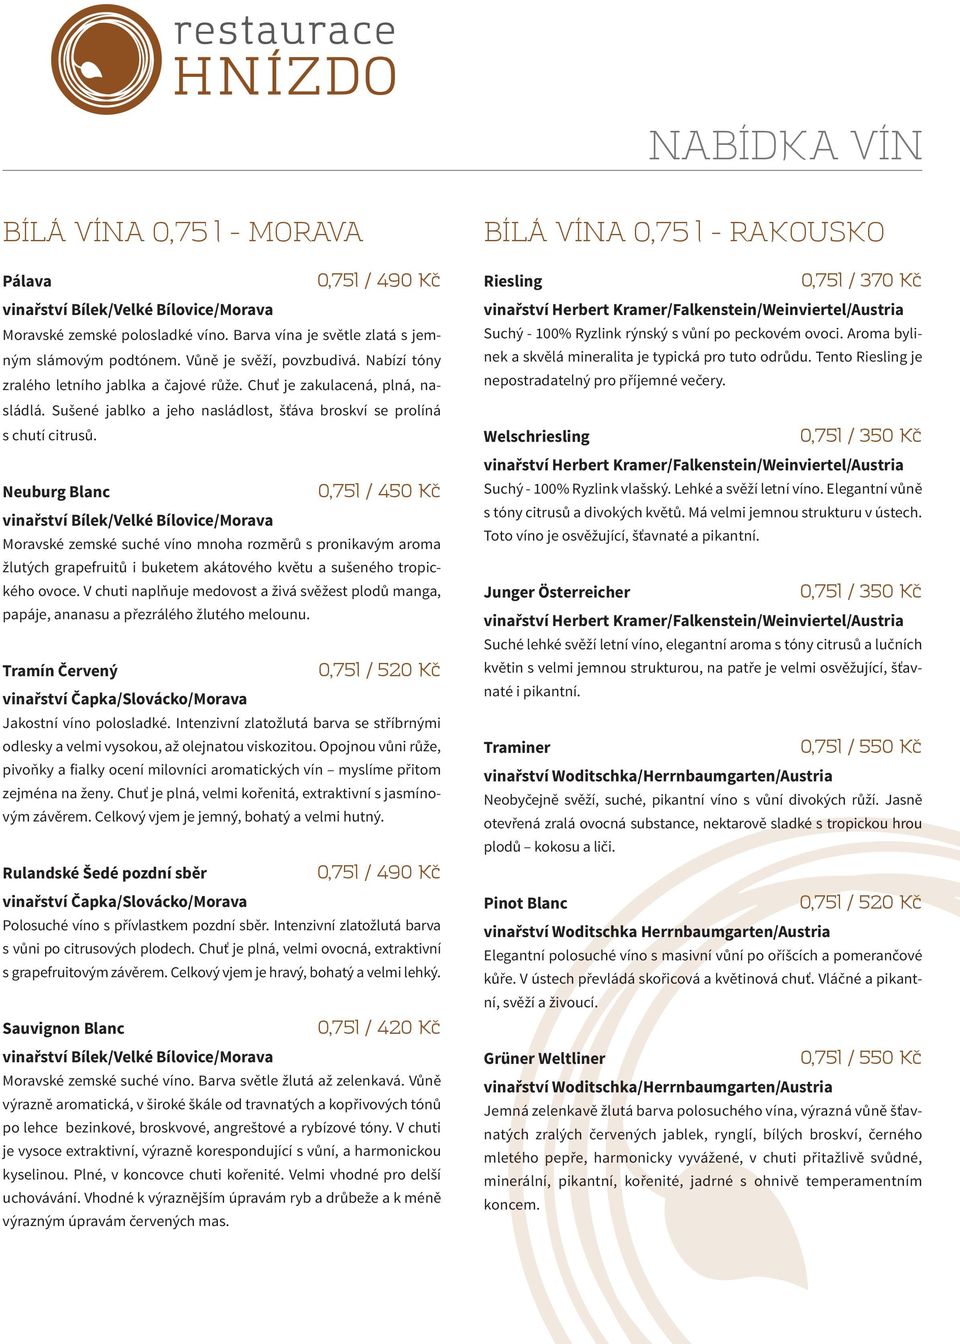 Neuburg Blanc 0,75l / 450 Kč vinařství Bílek/Velké Bílovice/Morava Moravské zemské suché víno mnoha rozměrů s pronikavým aroma žlutých grapefruitů i buketem akátového květu a sušeného tropického